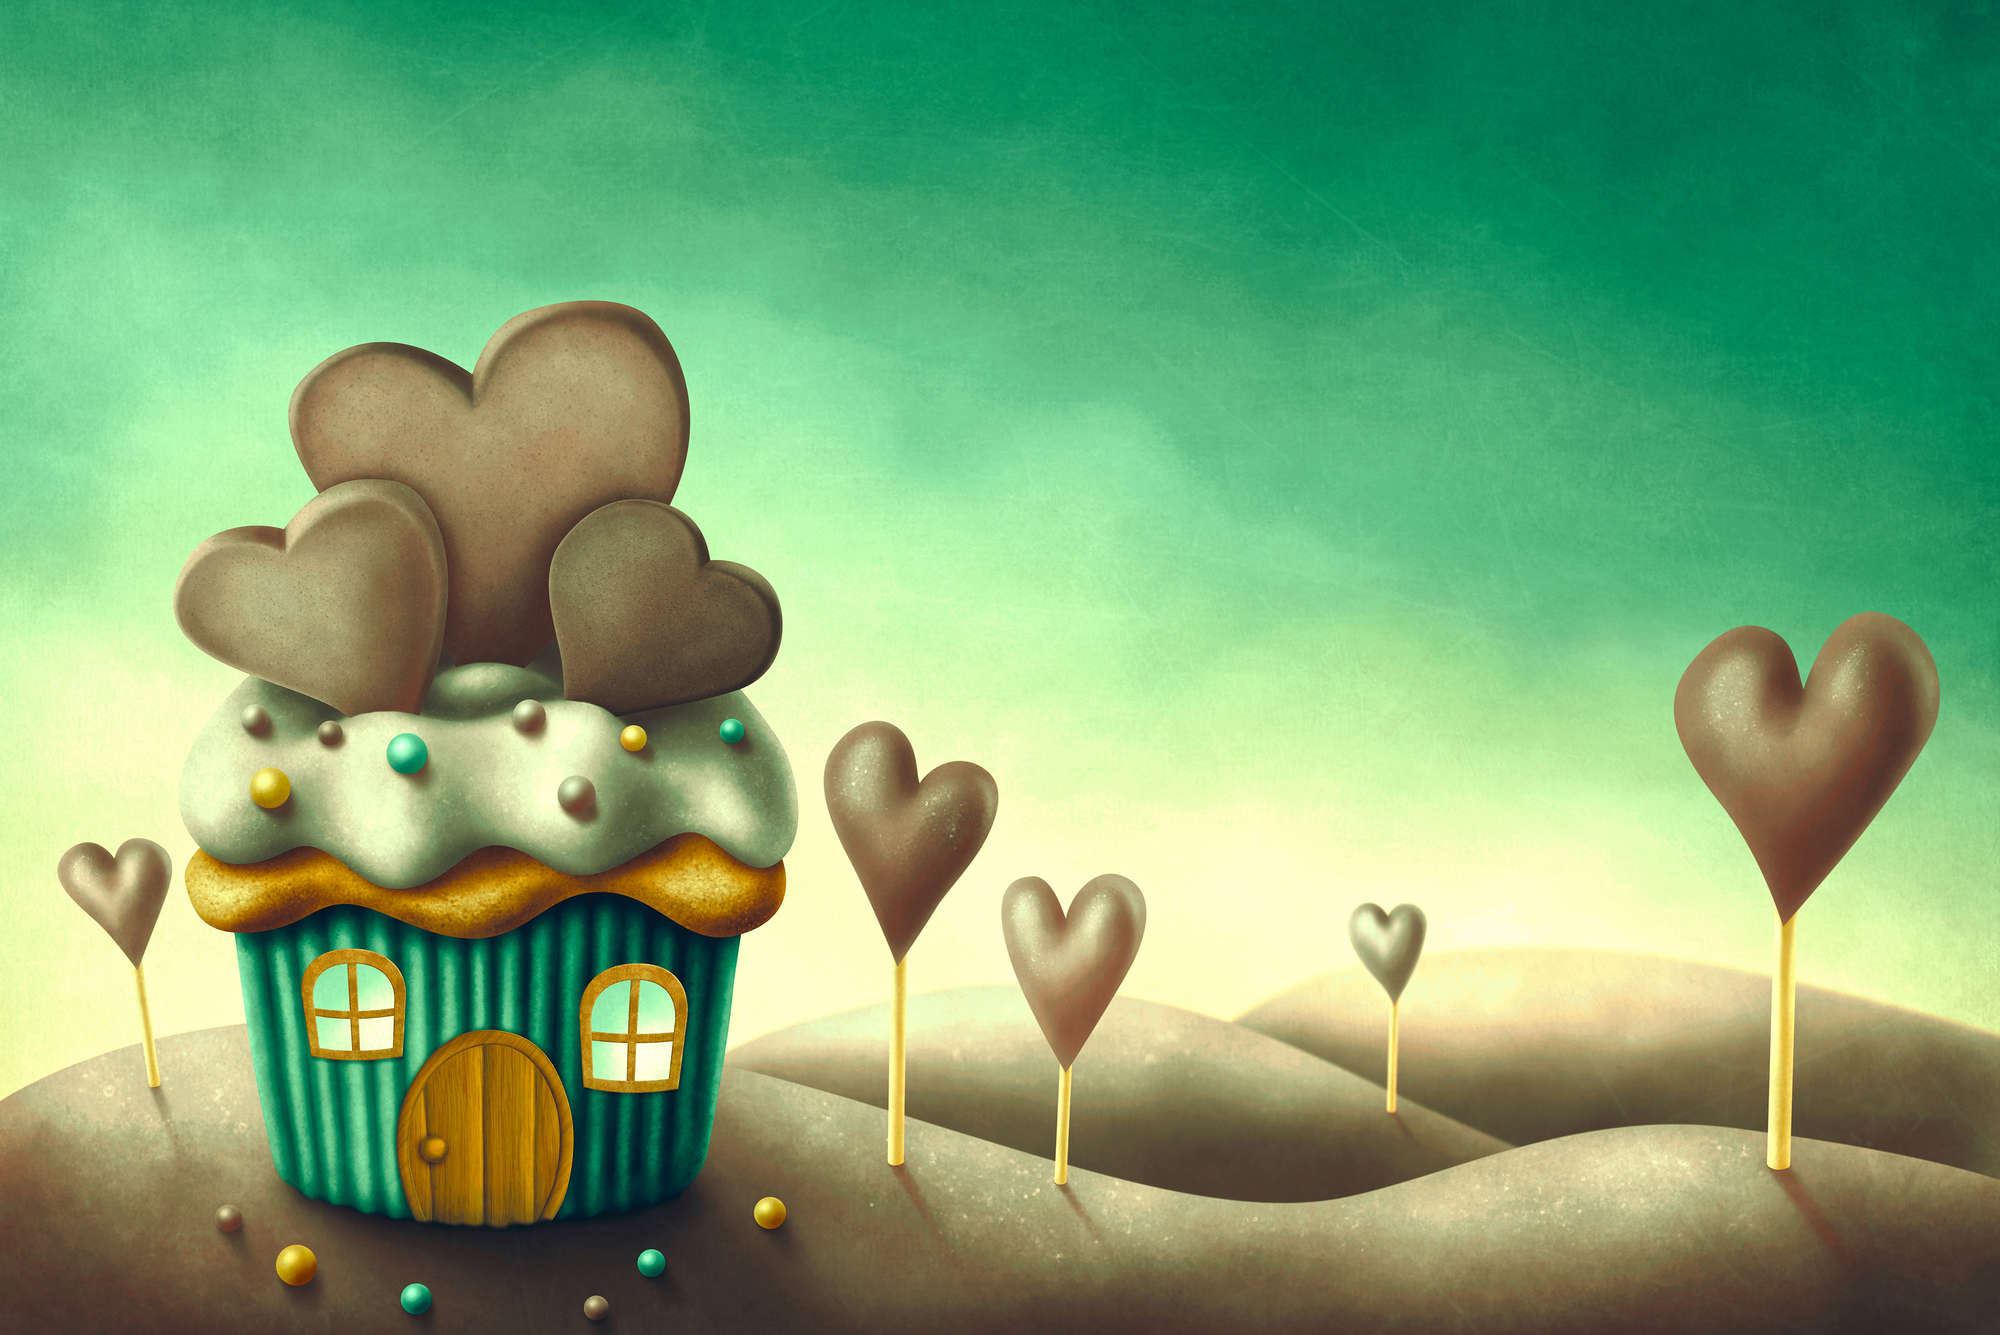             Kinder Muffin House in een wereld van snoepjes muurschildering op matte gladde vliesstof
        